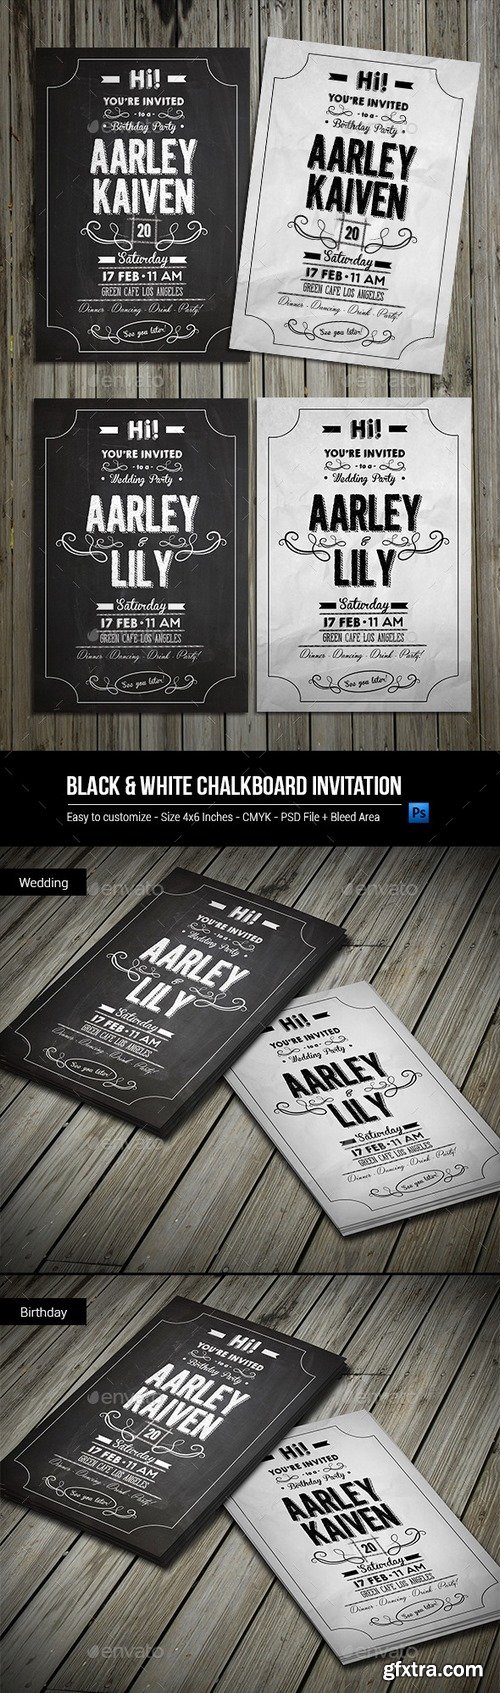 Graphicriver - Black & White Chalkboard Invitation 9908378